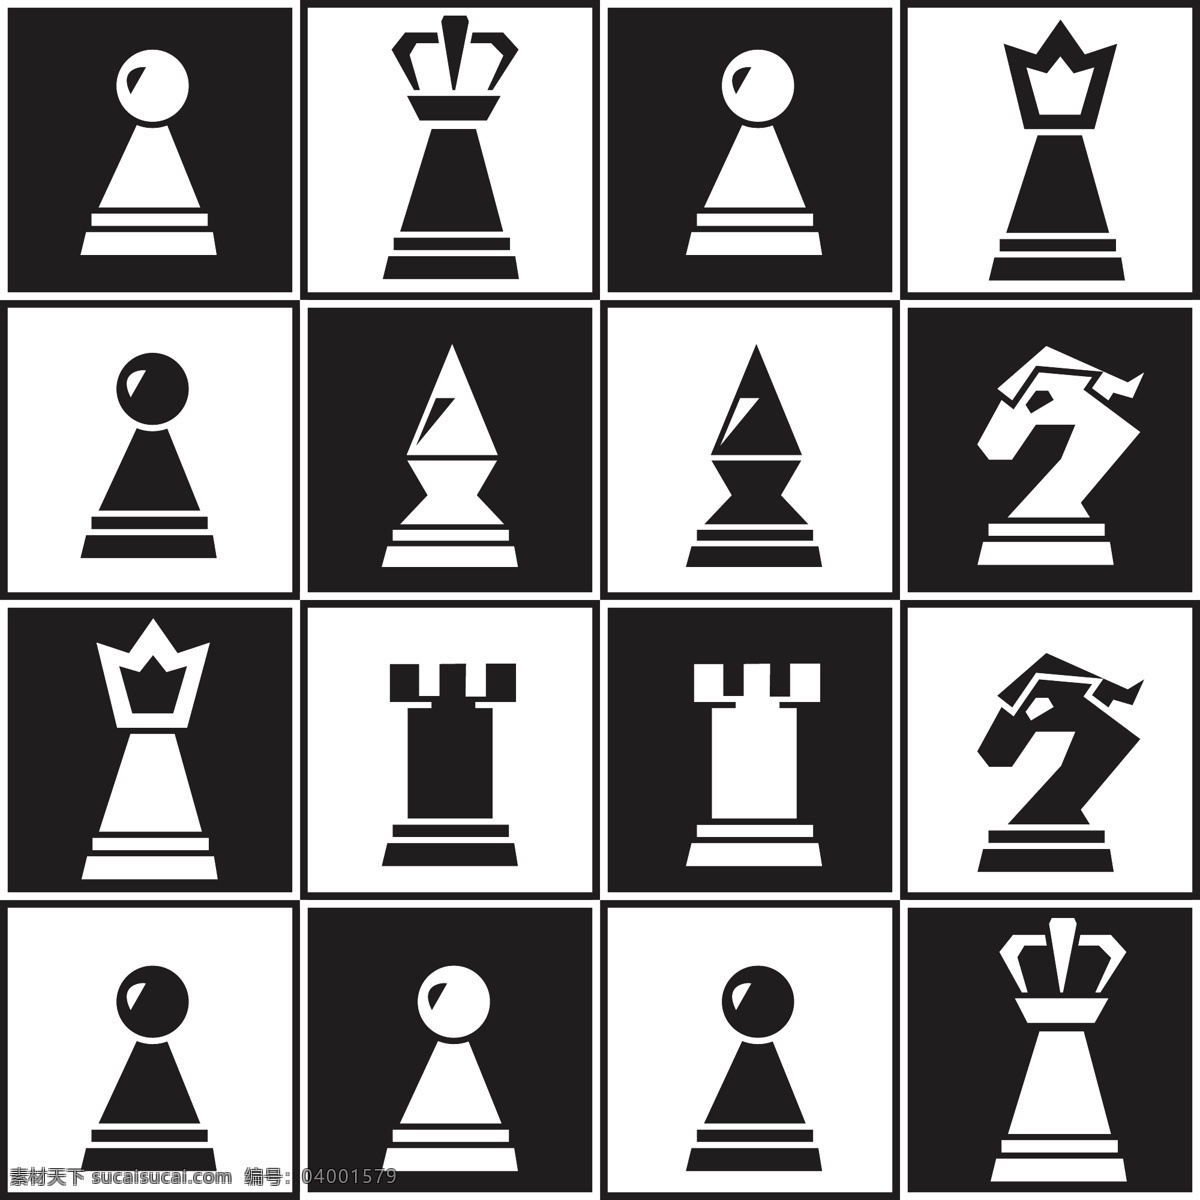 国际象棋 象棋 下棋 棋子 对弈 休闲游戏 棋类游戏 战略 策略 休闲娱乐 生活百科 矢量